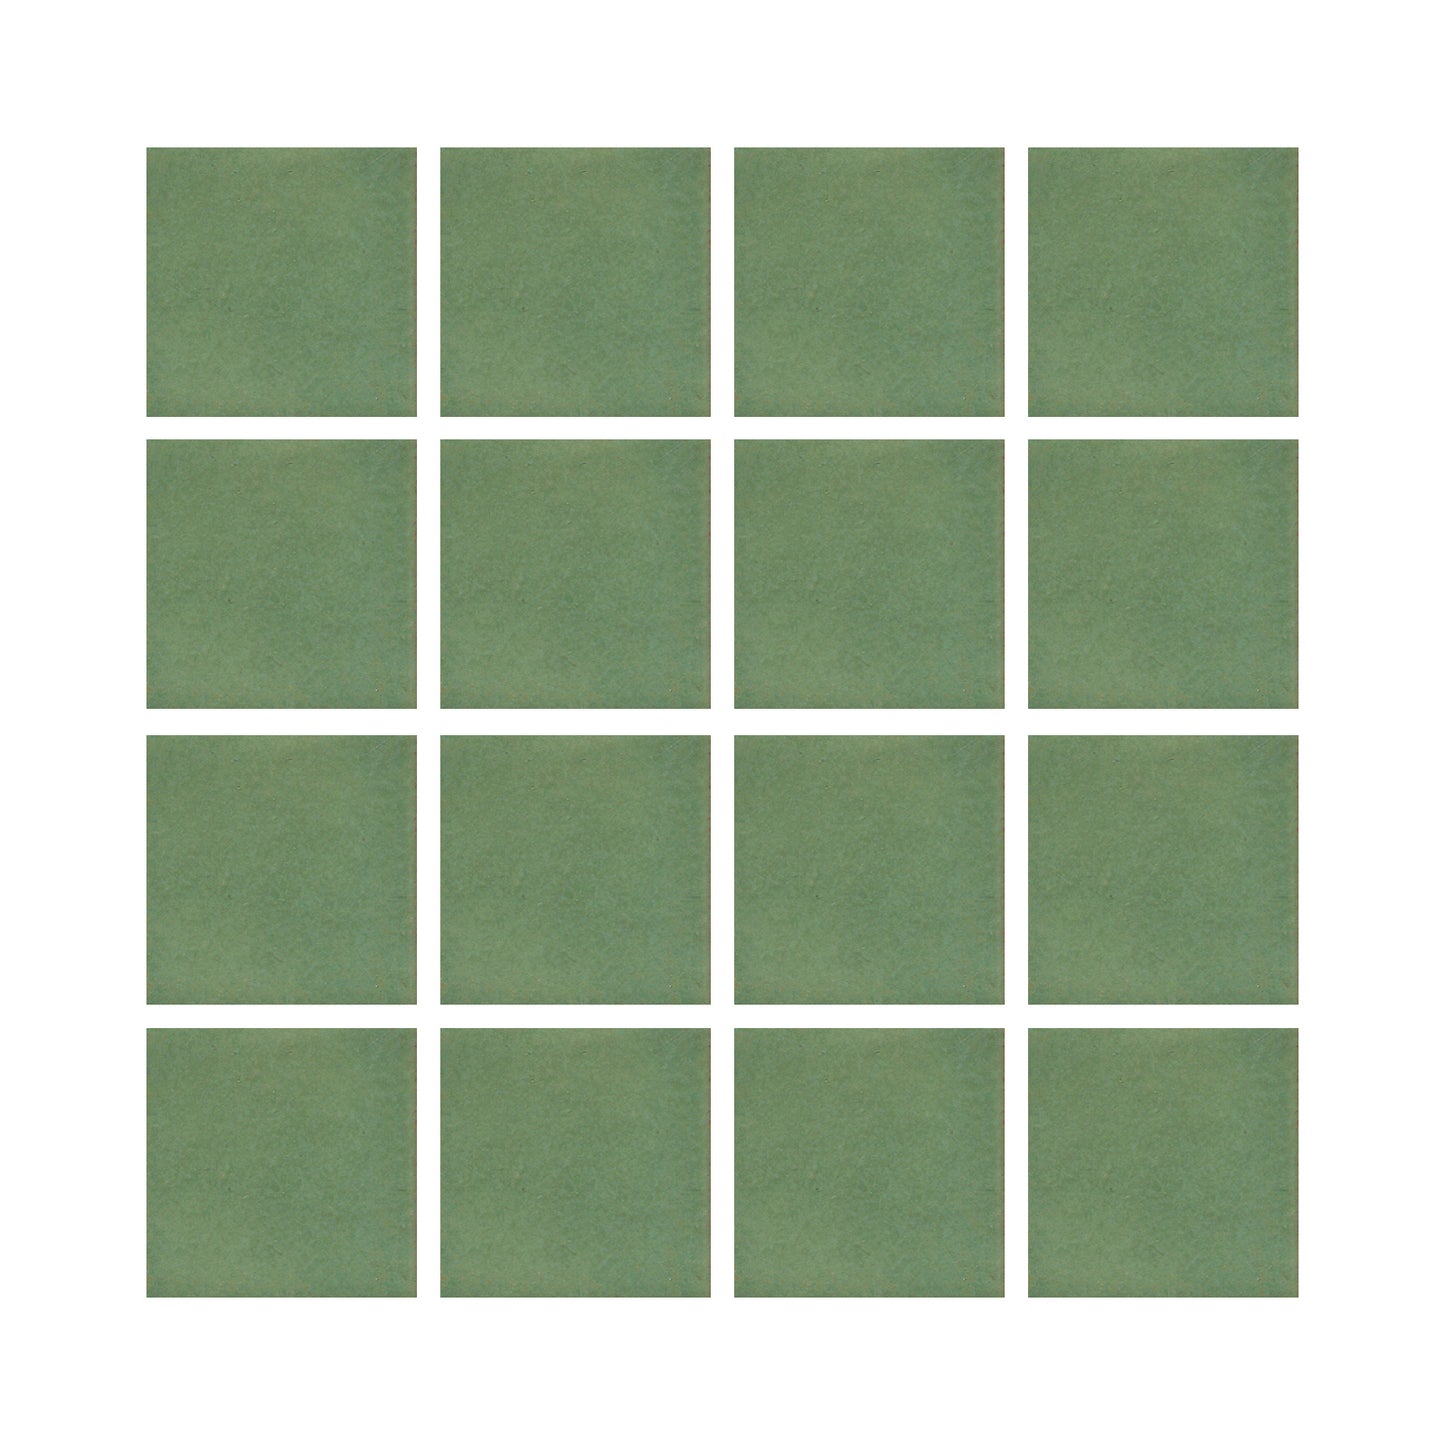 Wasabi green 2x2 field tile